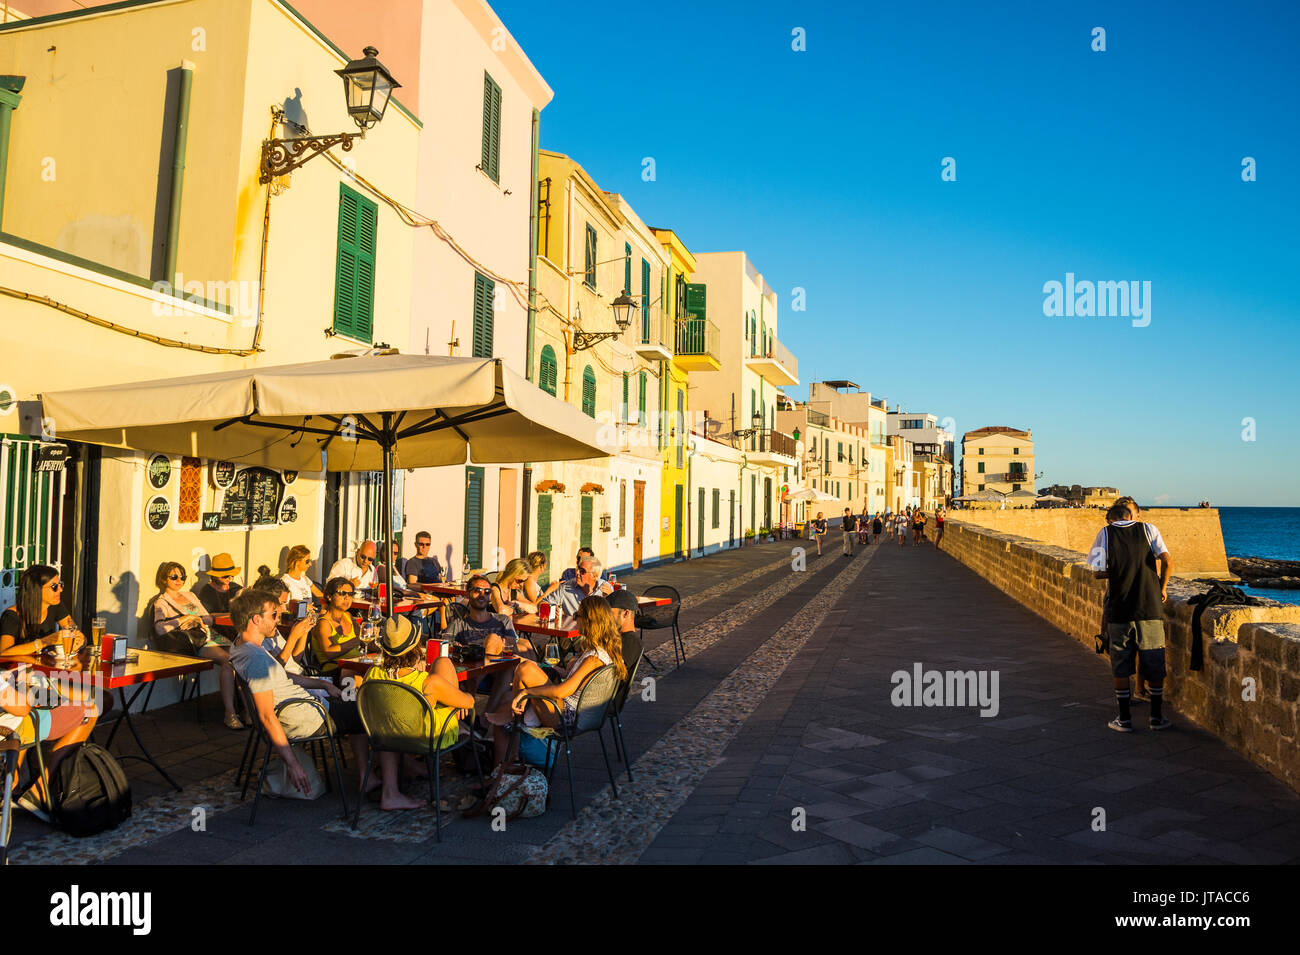 Ristorante sul mare lungomare della città costiera di Alghero, Sardegna, Mediterraneo, l'Italia, Europa Foto Stock